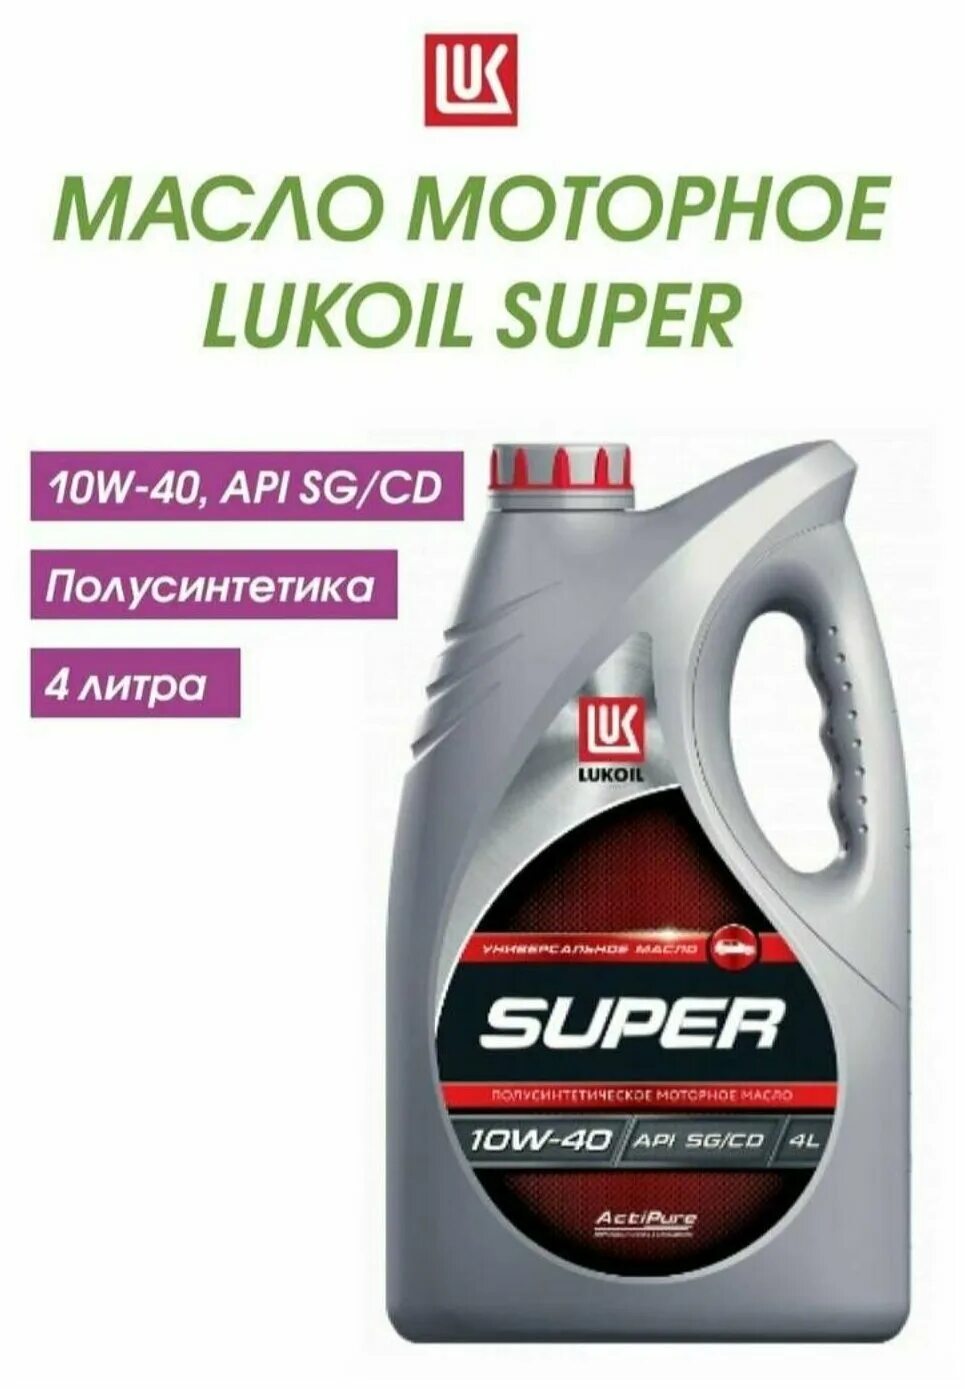 Масло 10w 40 5 литров цена. Масло моторное Лукойл 10w-40 super. Lukoil super 5w-40. Моторное масло Лукойл (Lukoil) 5w-40 полусинтетическое 4 л. Масло Лукойл супер 10w 40 полусинтетика.